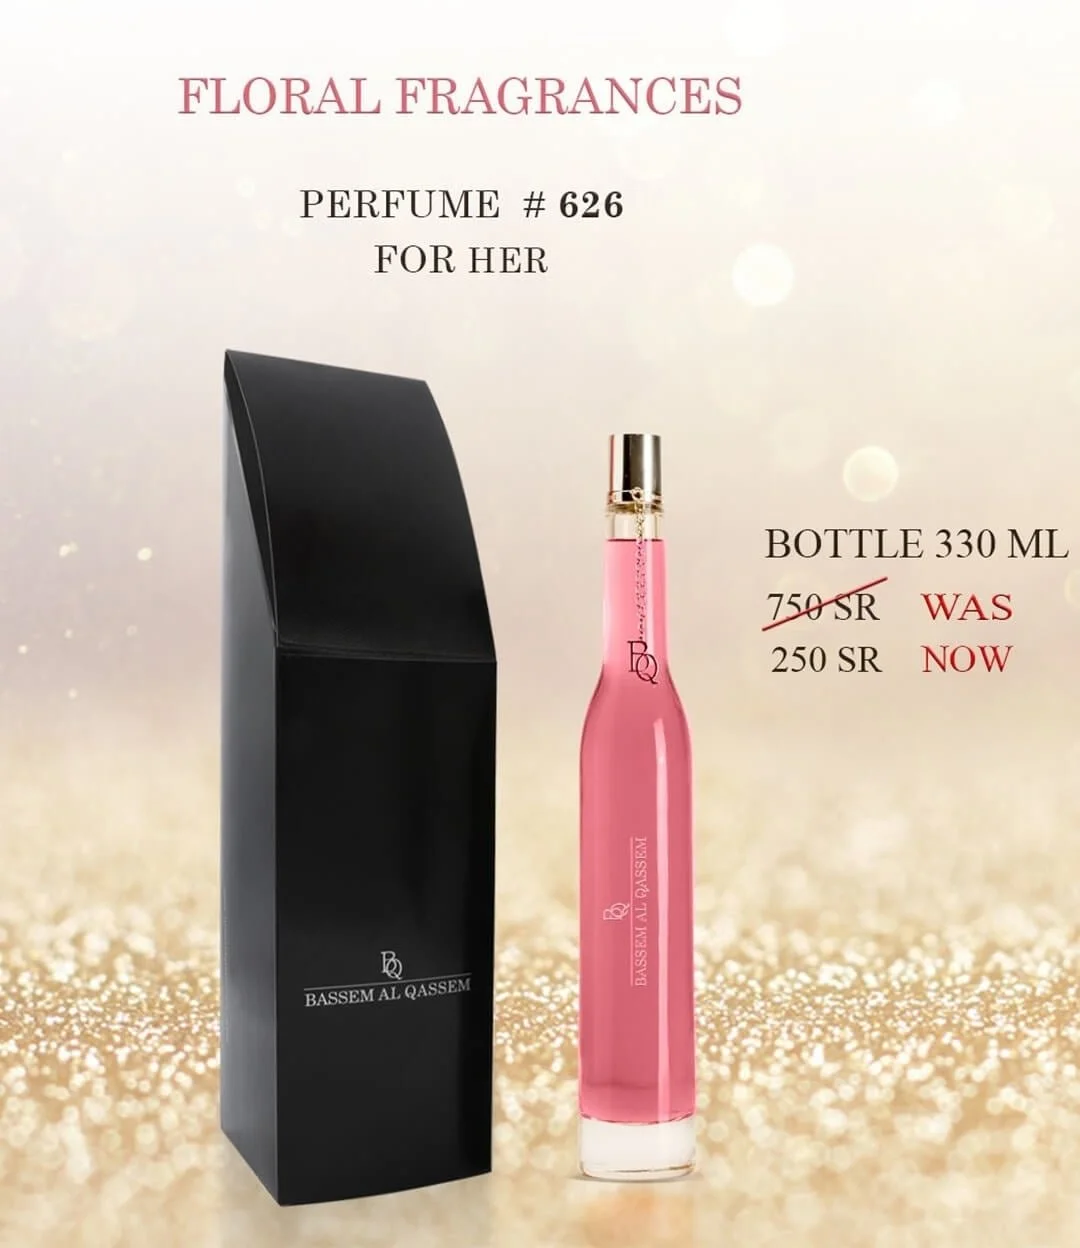 Perfume #626 Floral Fragrance for Her by Bassem Al Qassem 